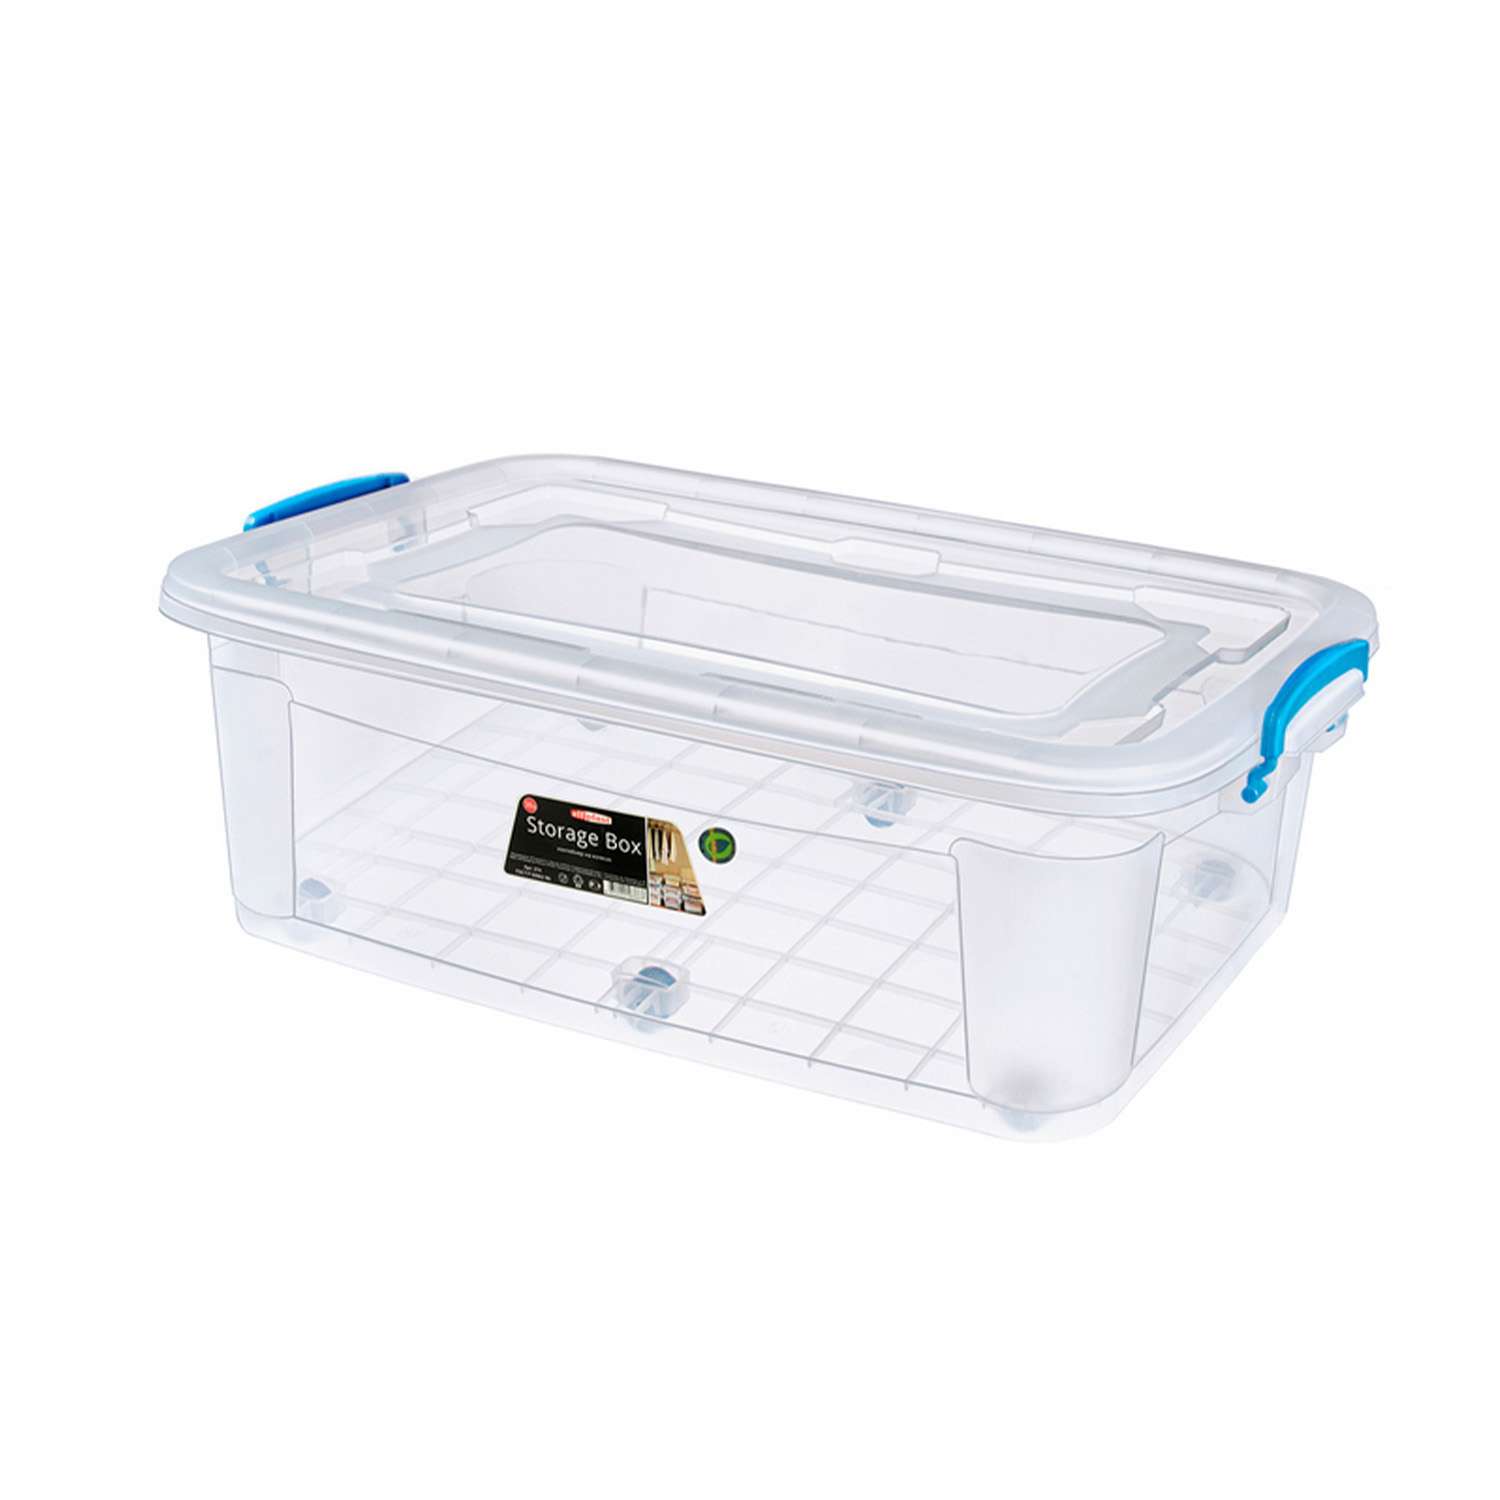 Контейнер elfplast для хранения Storage Box на колесах прозрачный 30 л 64х41.5х19.5 см - фото 9